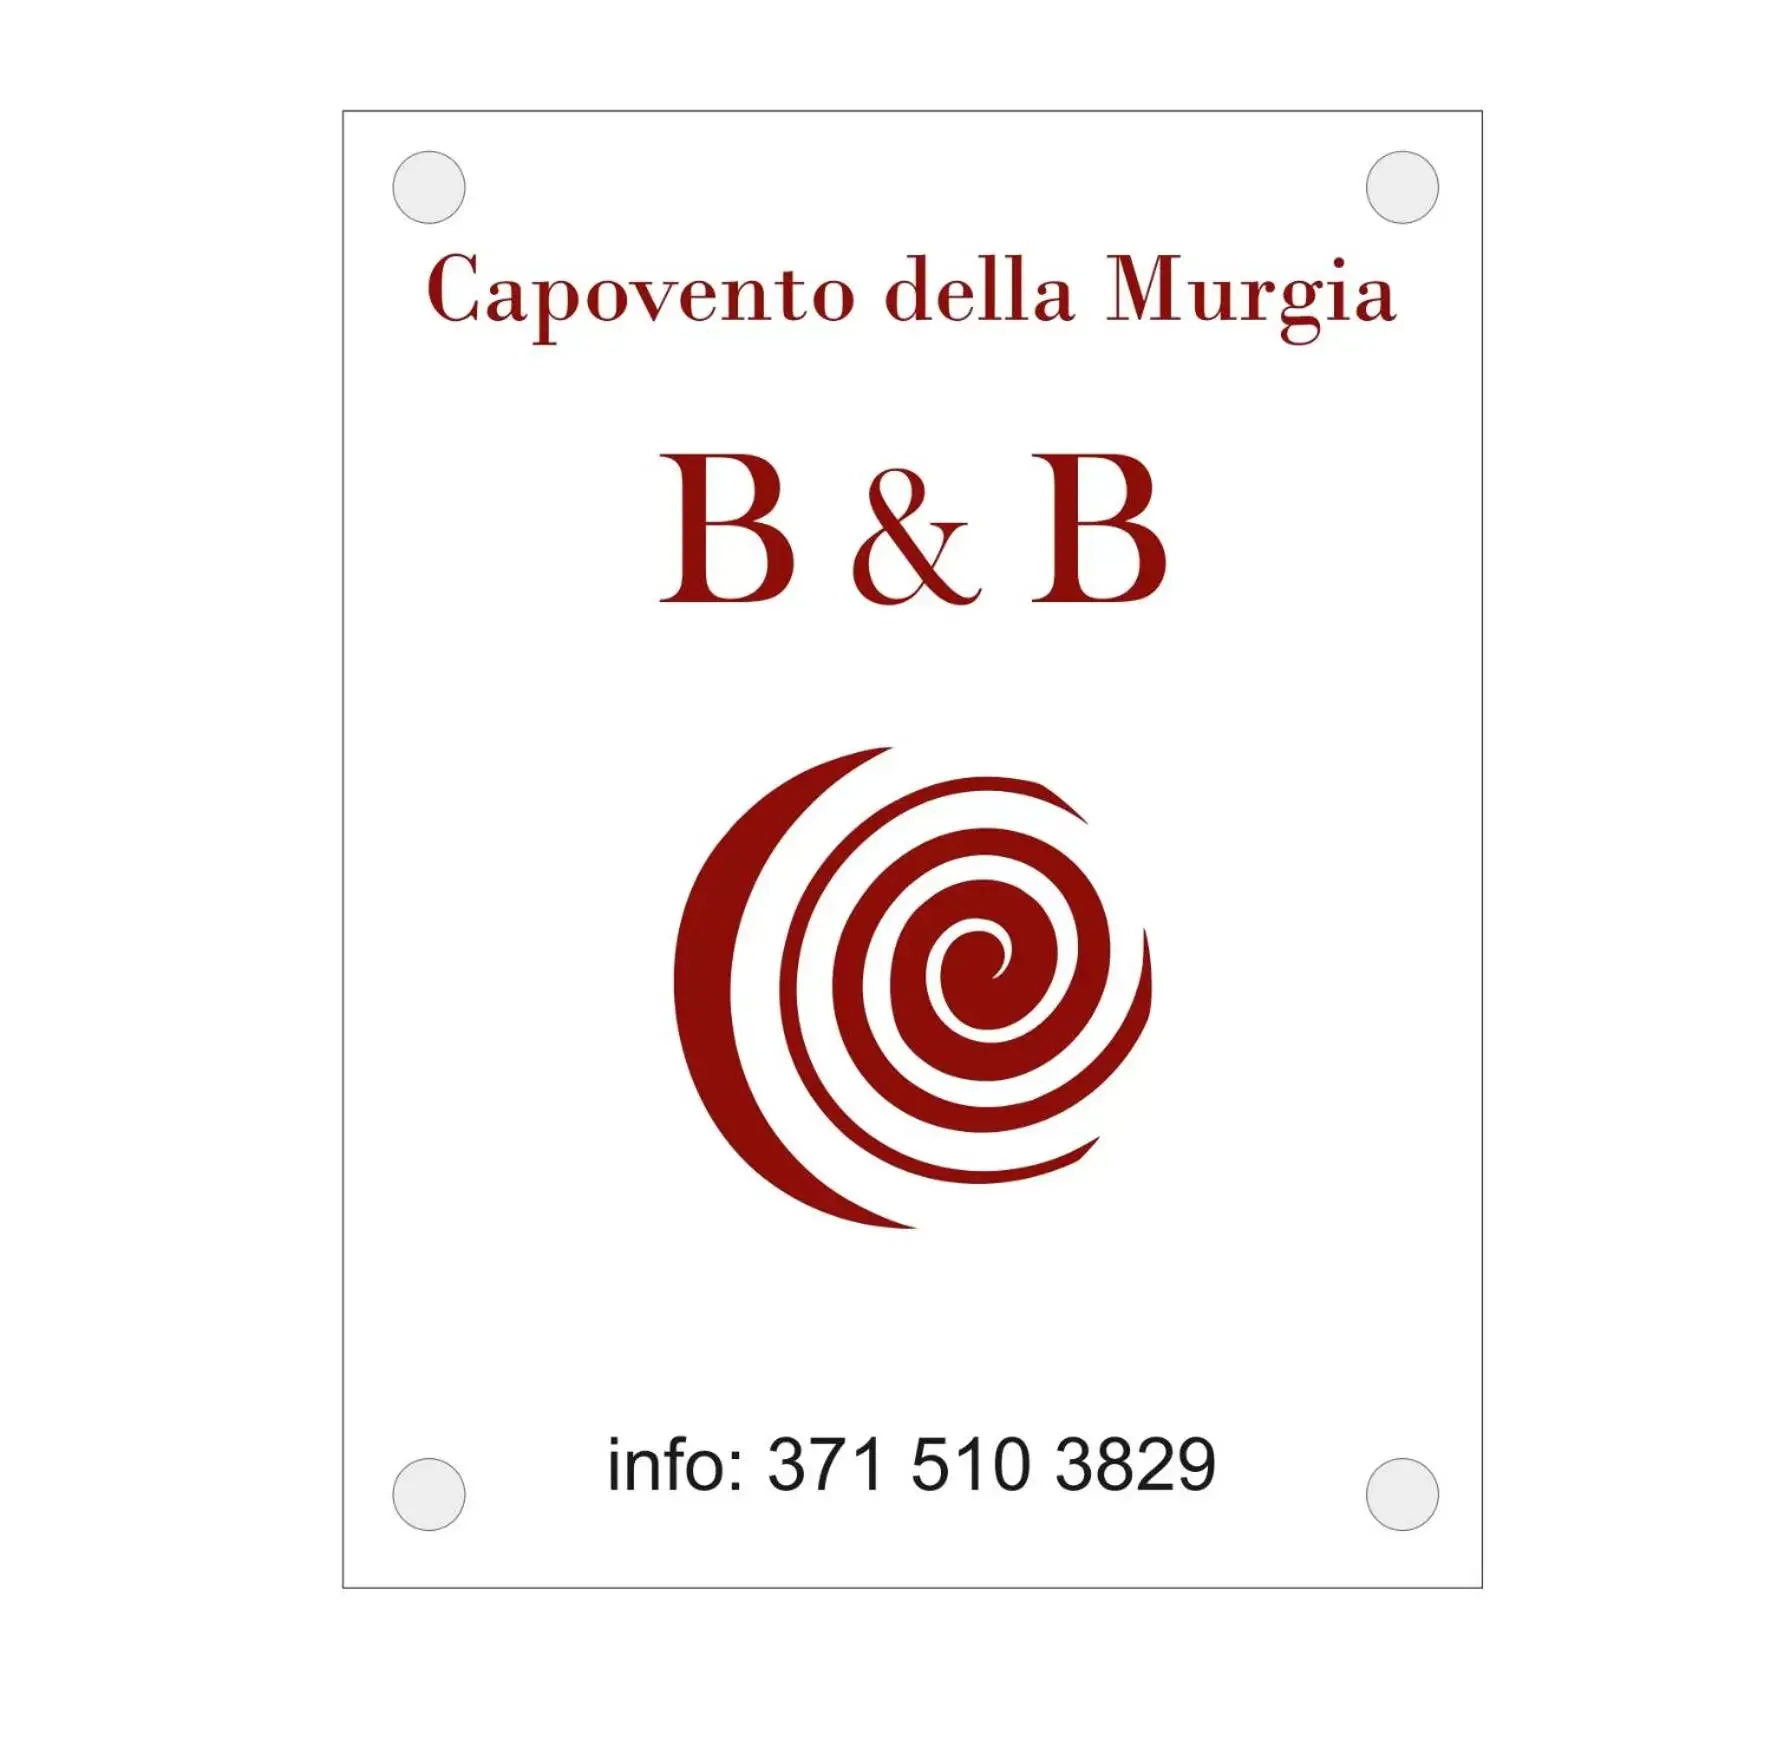 B&B Capovento Della Murgia